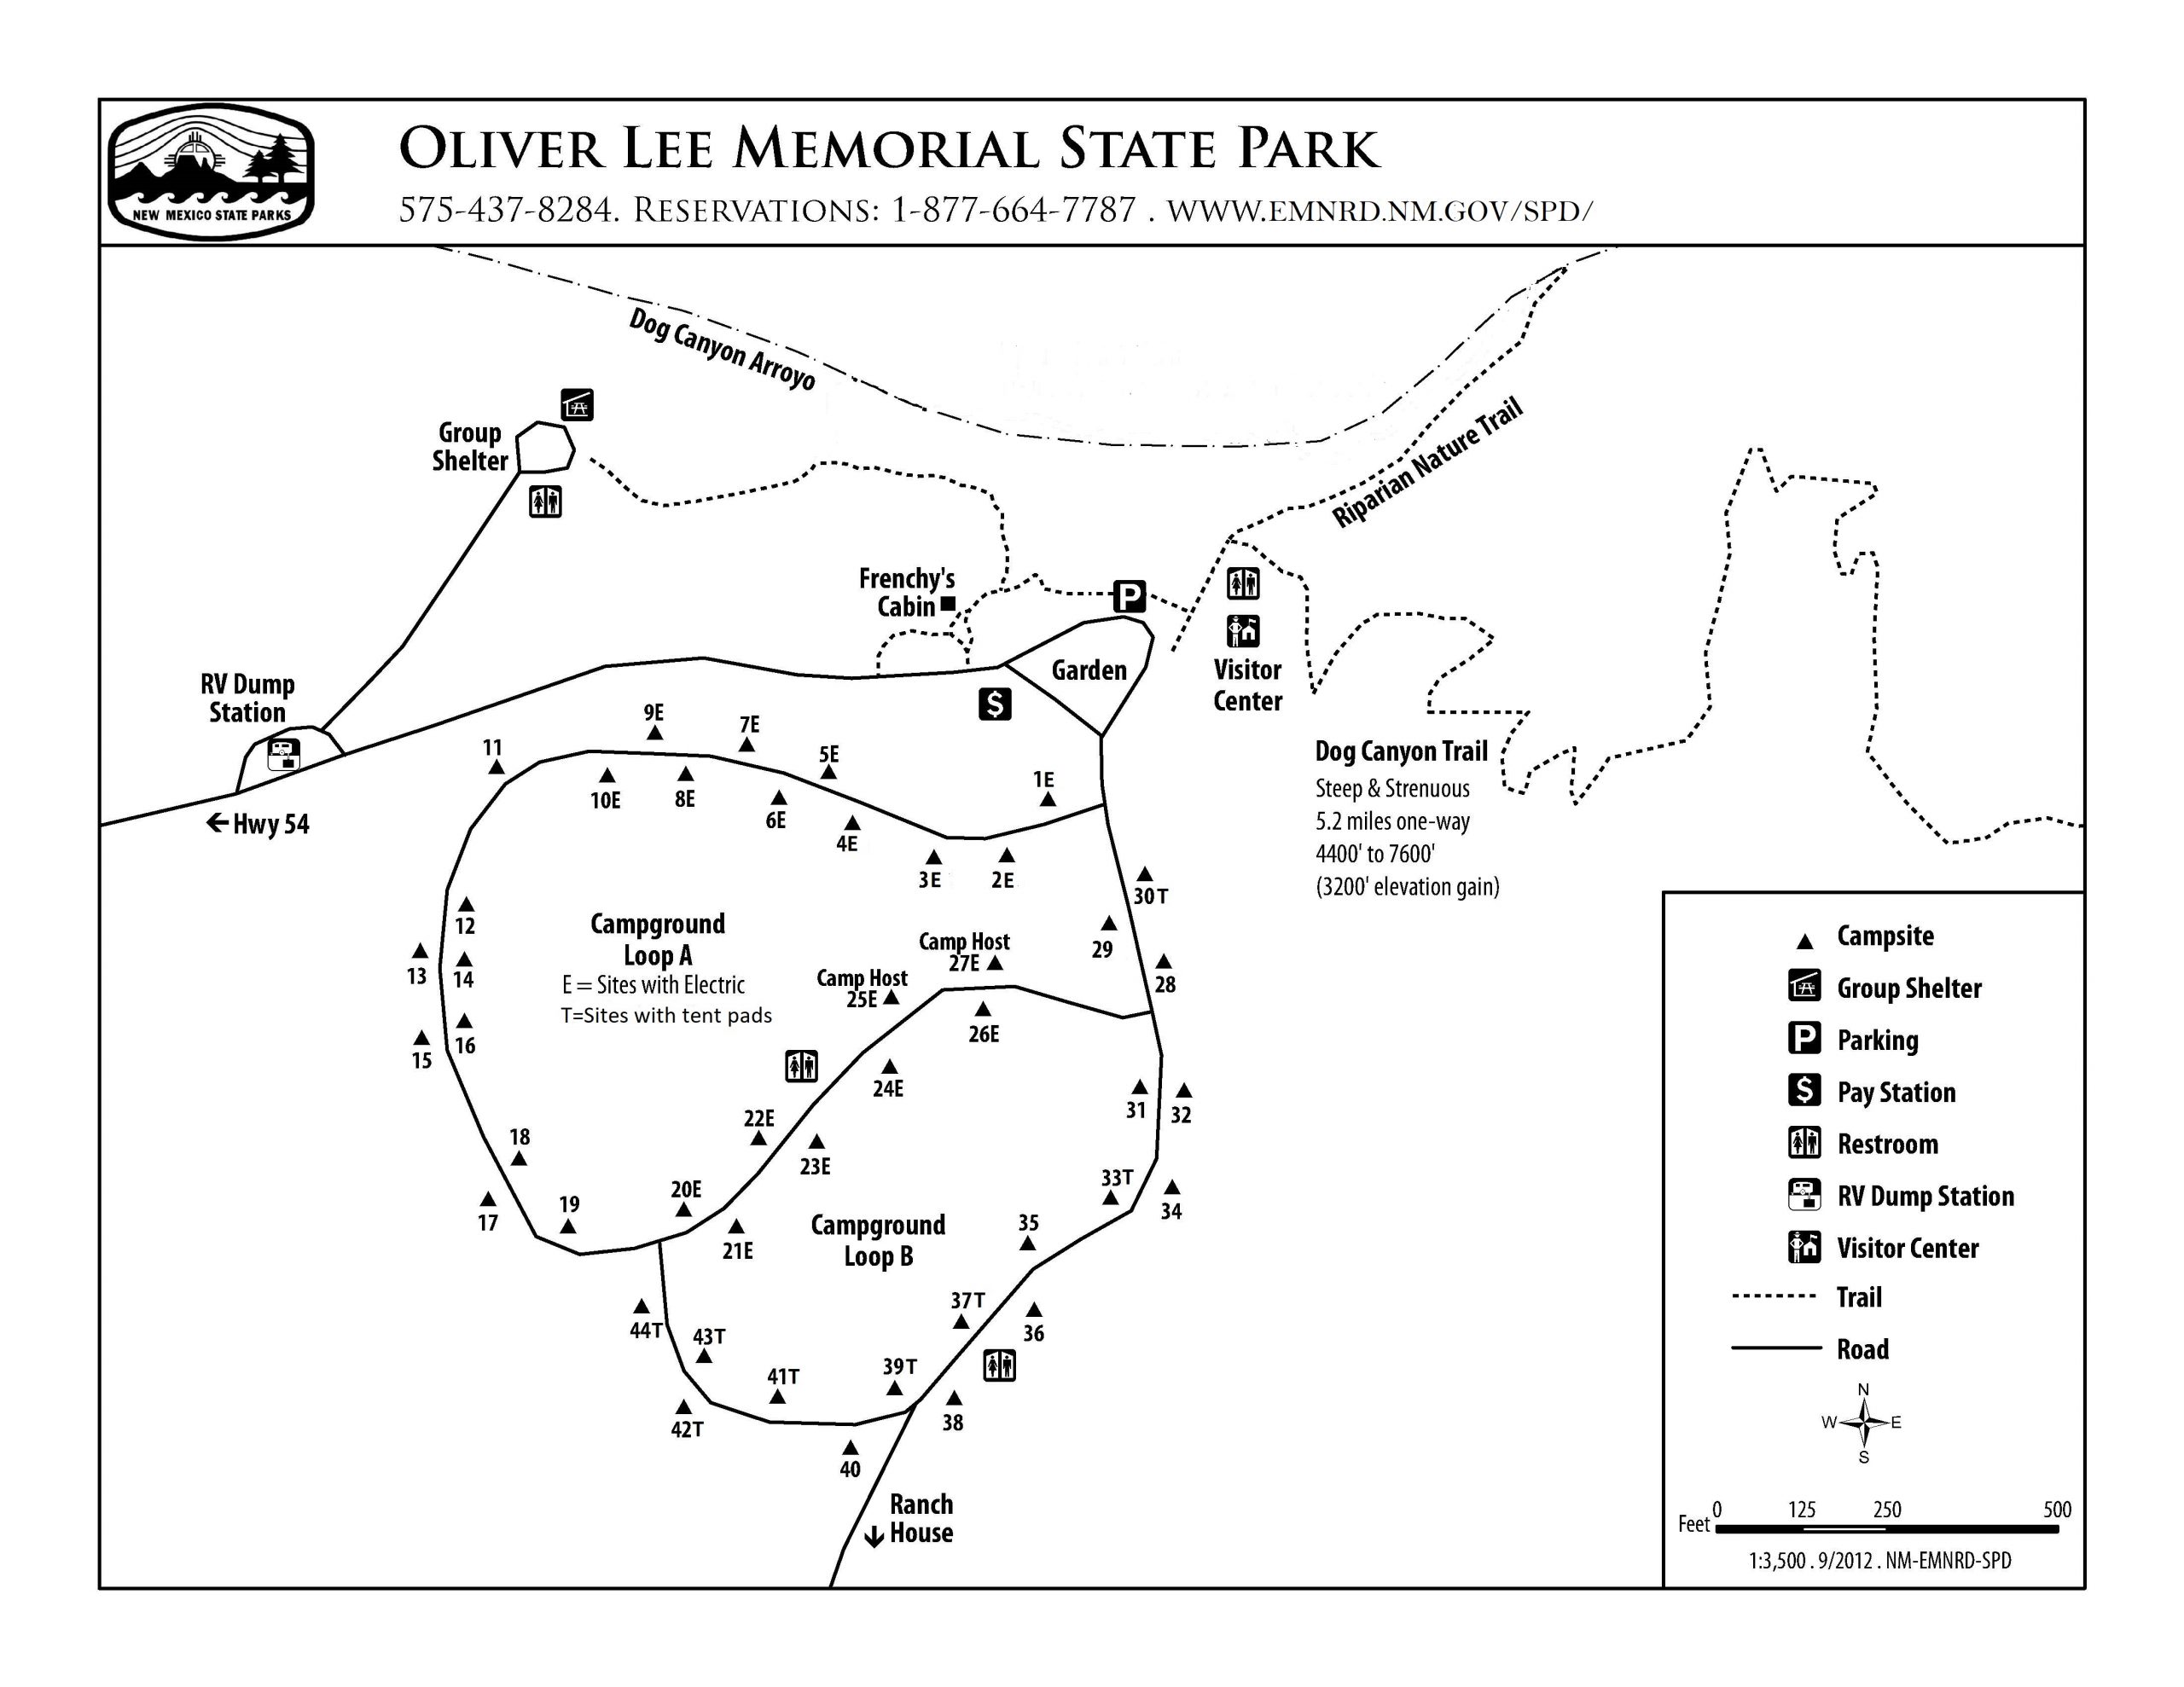 Oliver Lee Memorial State Park - State Parks